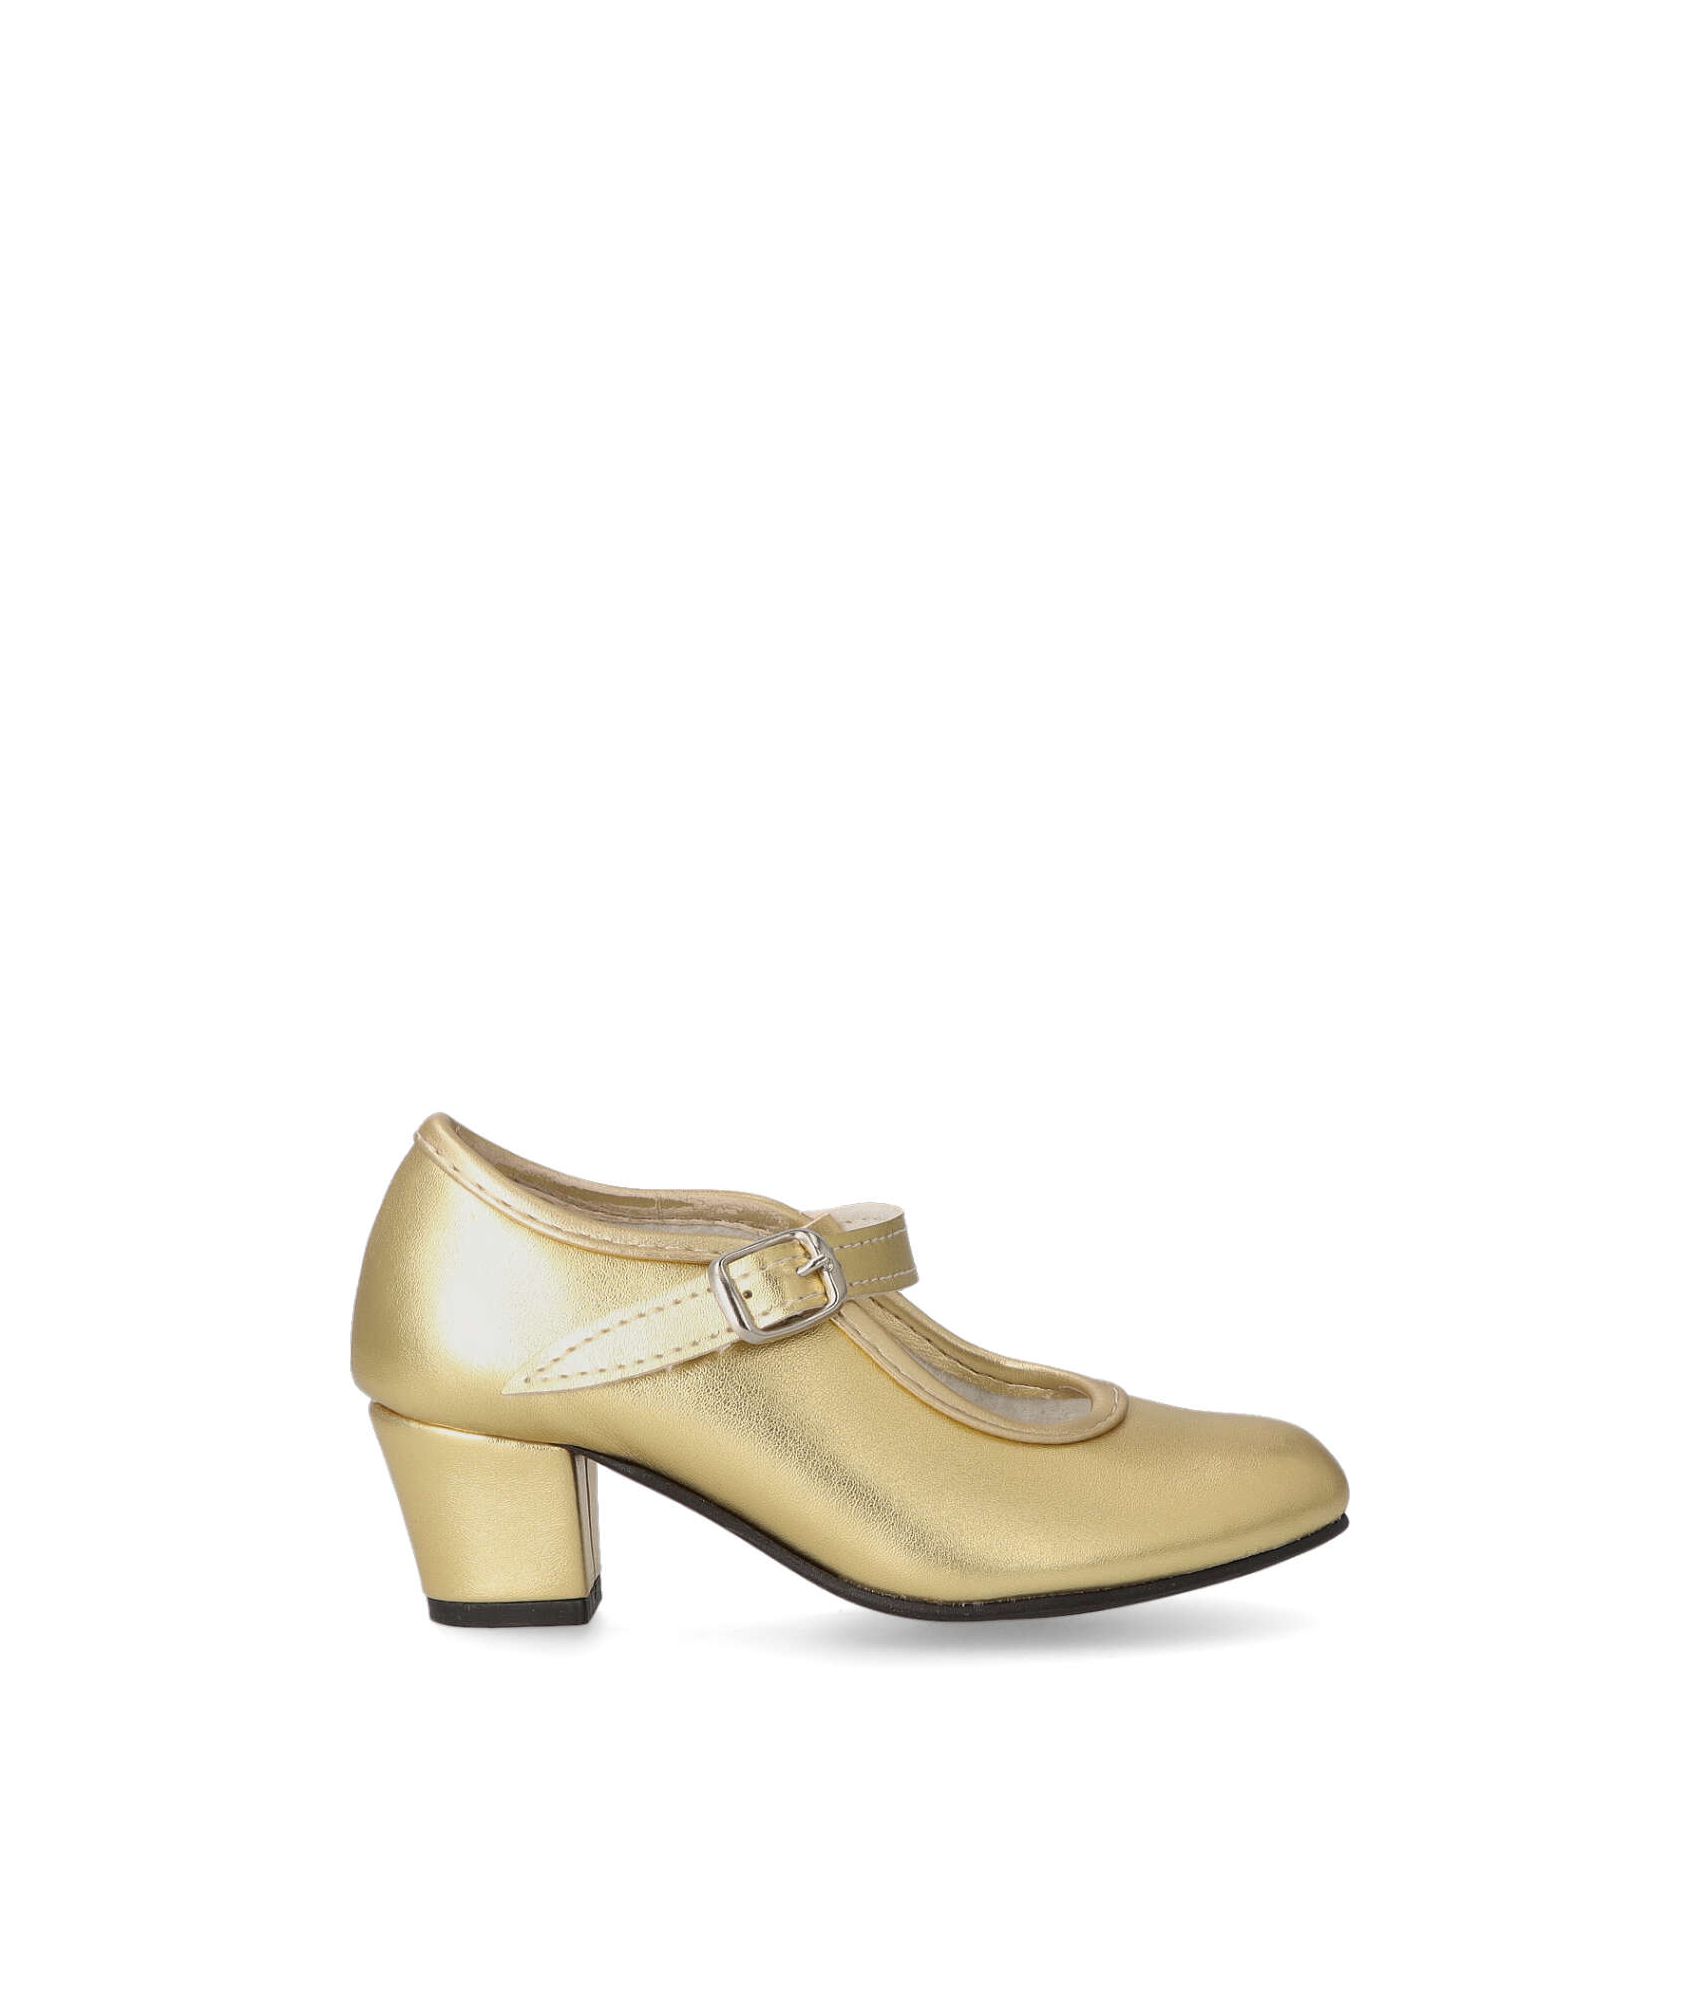 Zapato flamenco oro